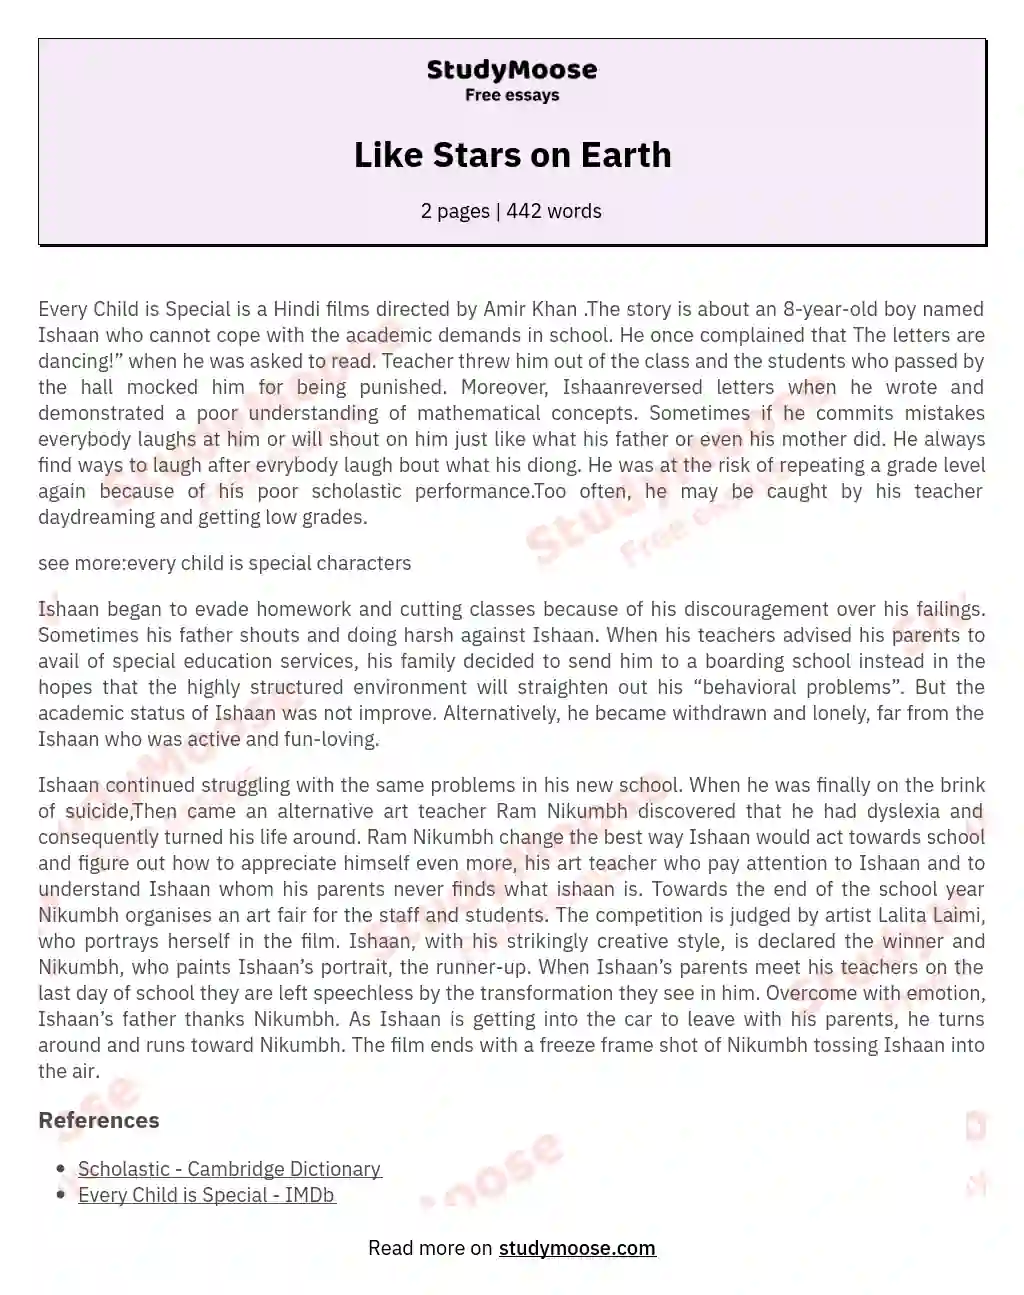 Like Stars on Earth essay